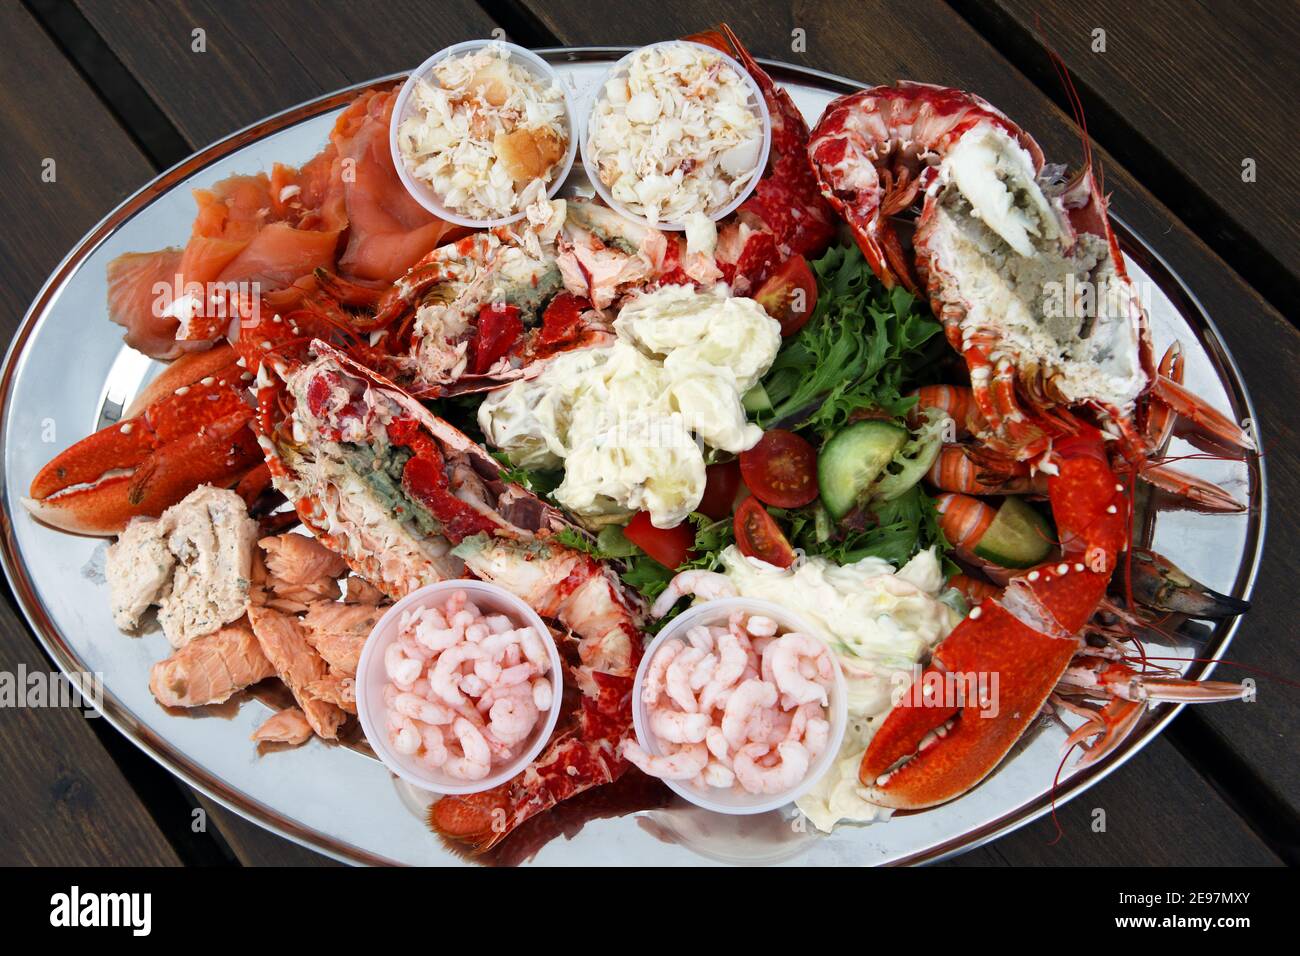 Assiette de fruits de mer écossais avec homard, crevettes, saumon fumé et poché, langoustines et crabe sur un lit de salade Banque D'Images